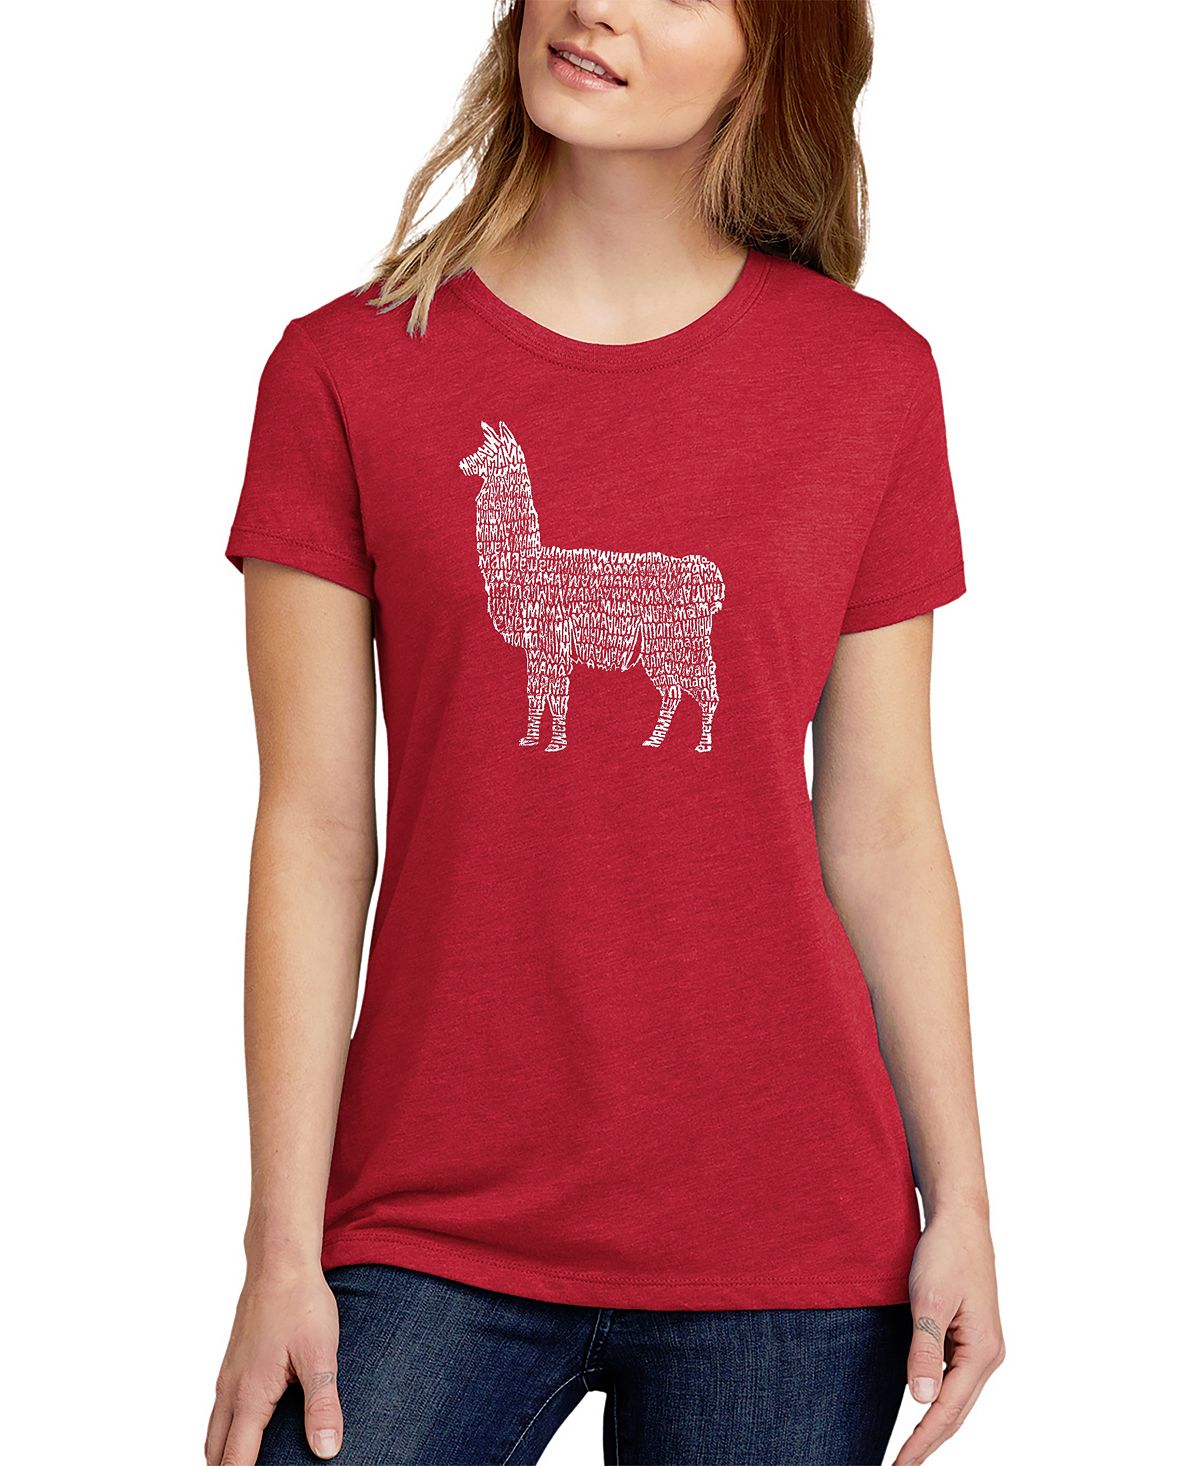 Женская футболка premium blend llama mama word art LA Pop Art, красный